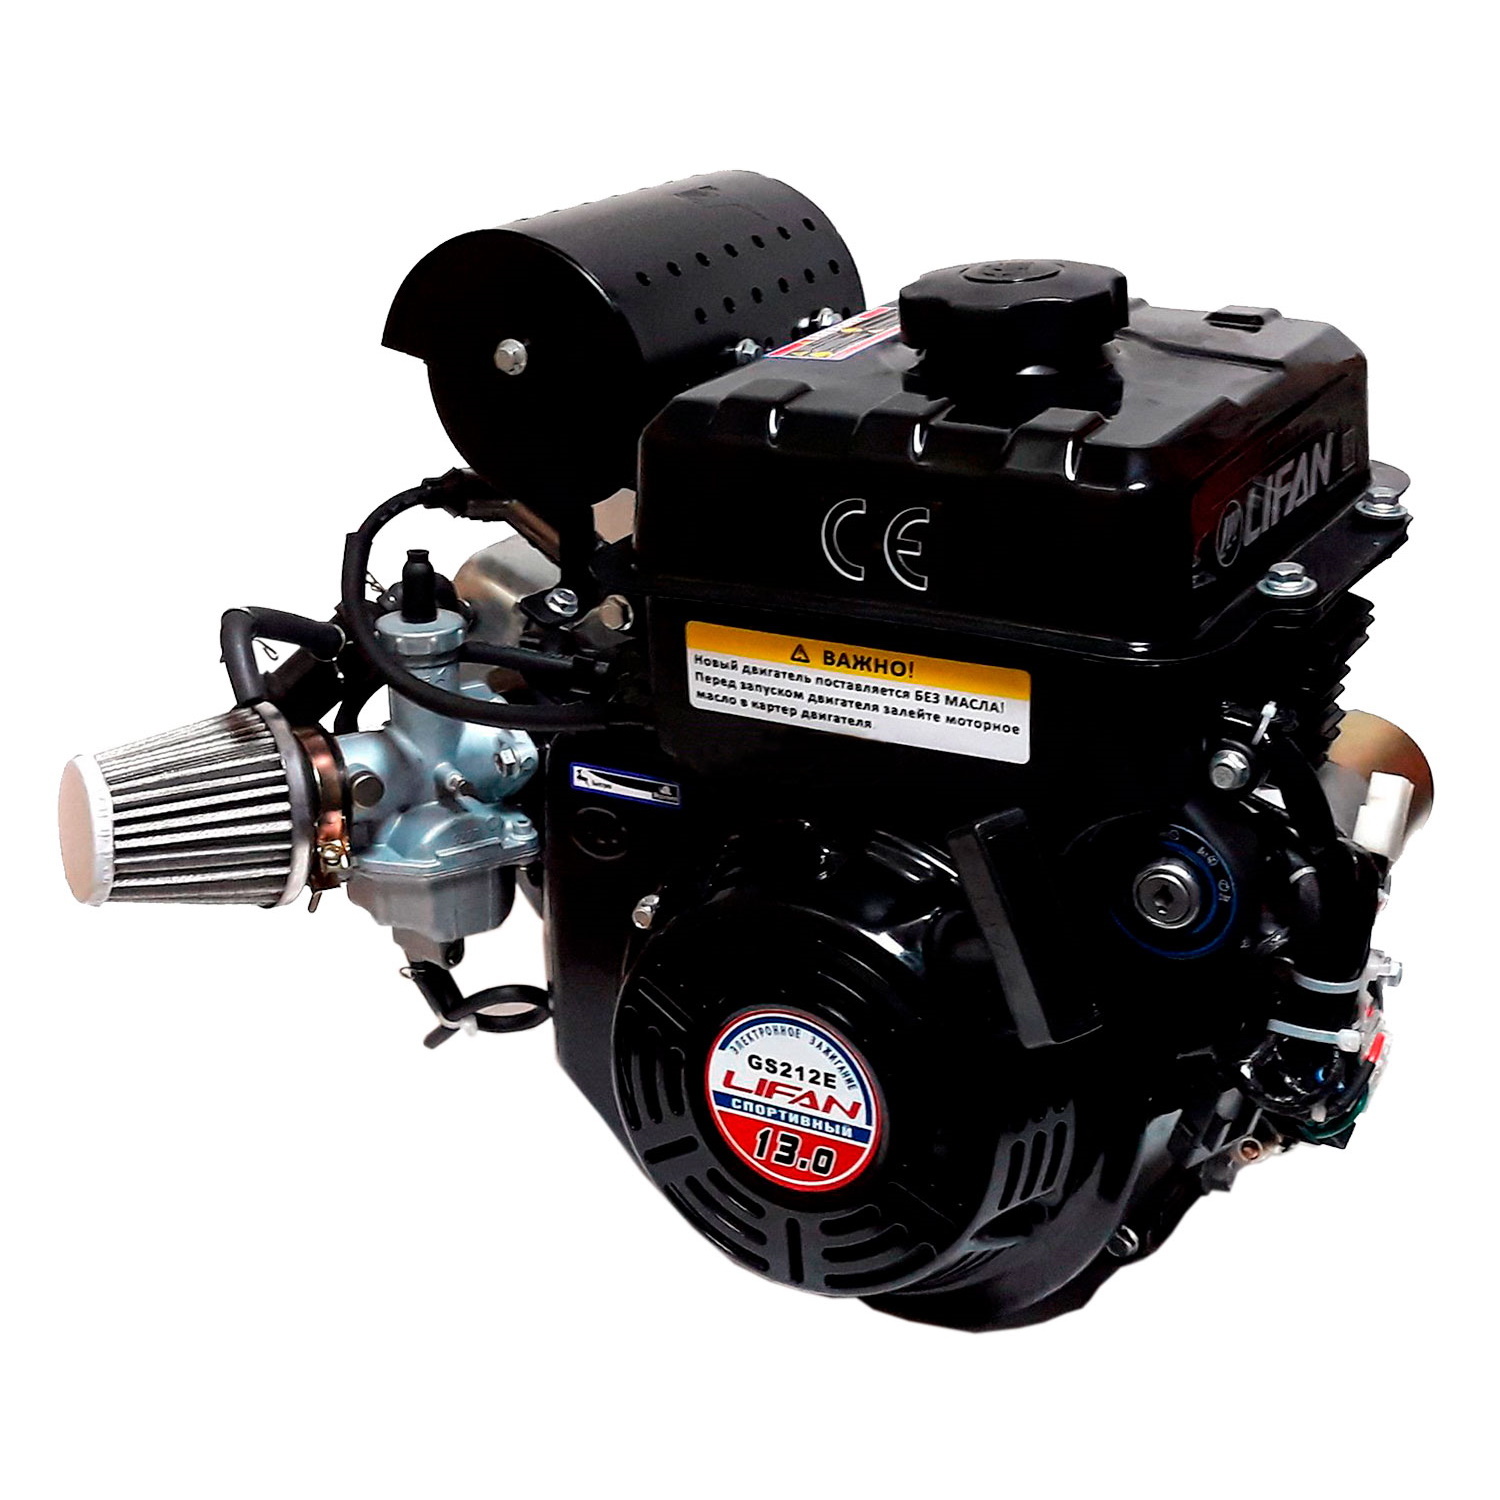 Купить двигатель Lifan GS212E (13 л.с.). Цена на Lifan GS212E в .